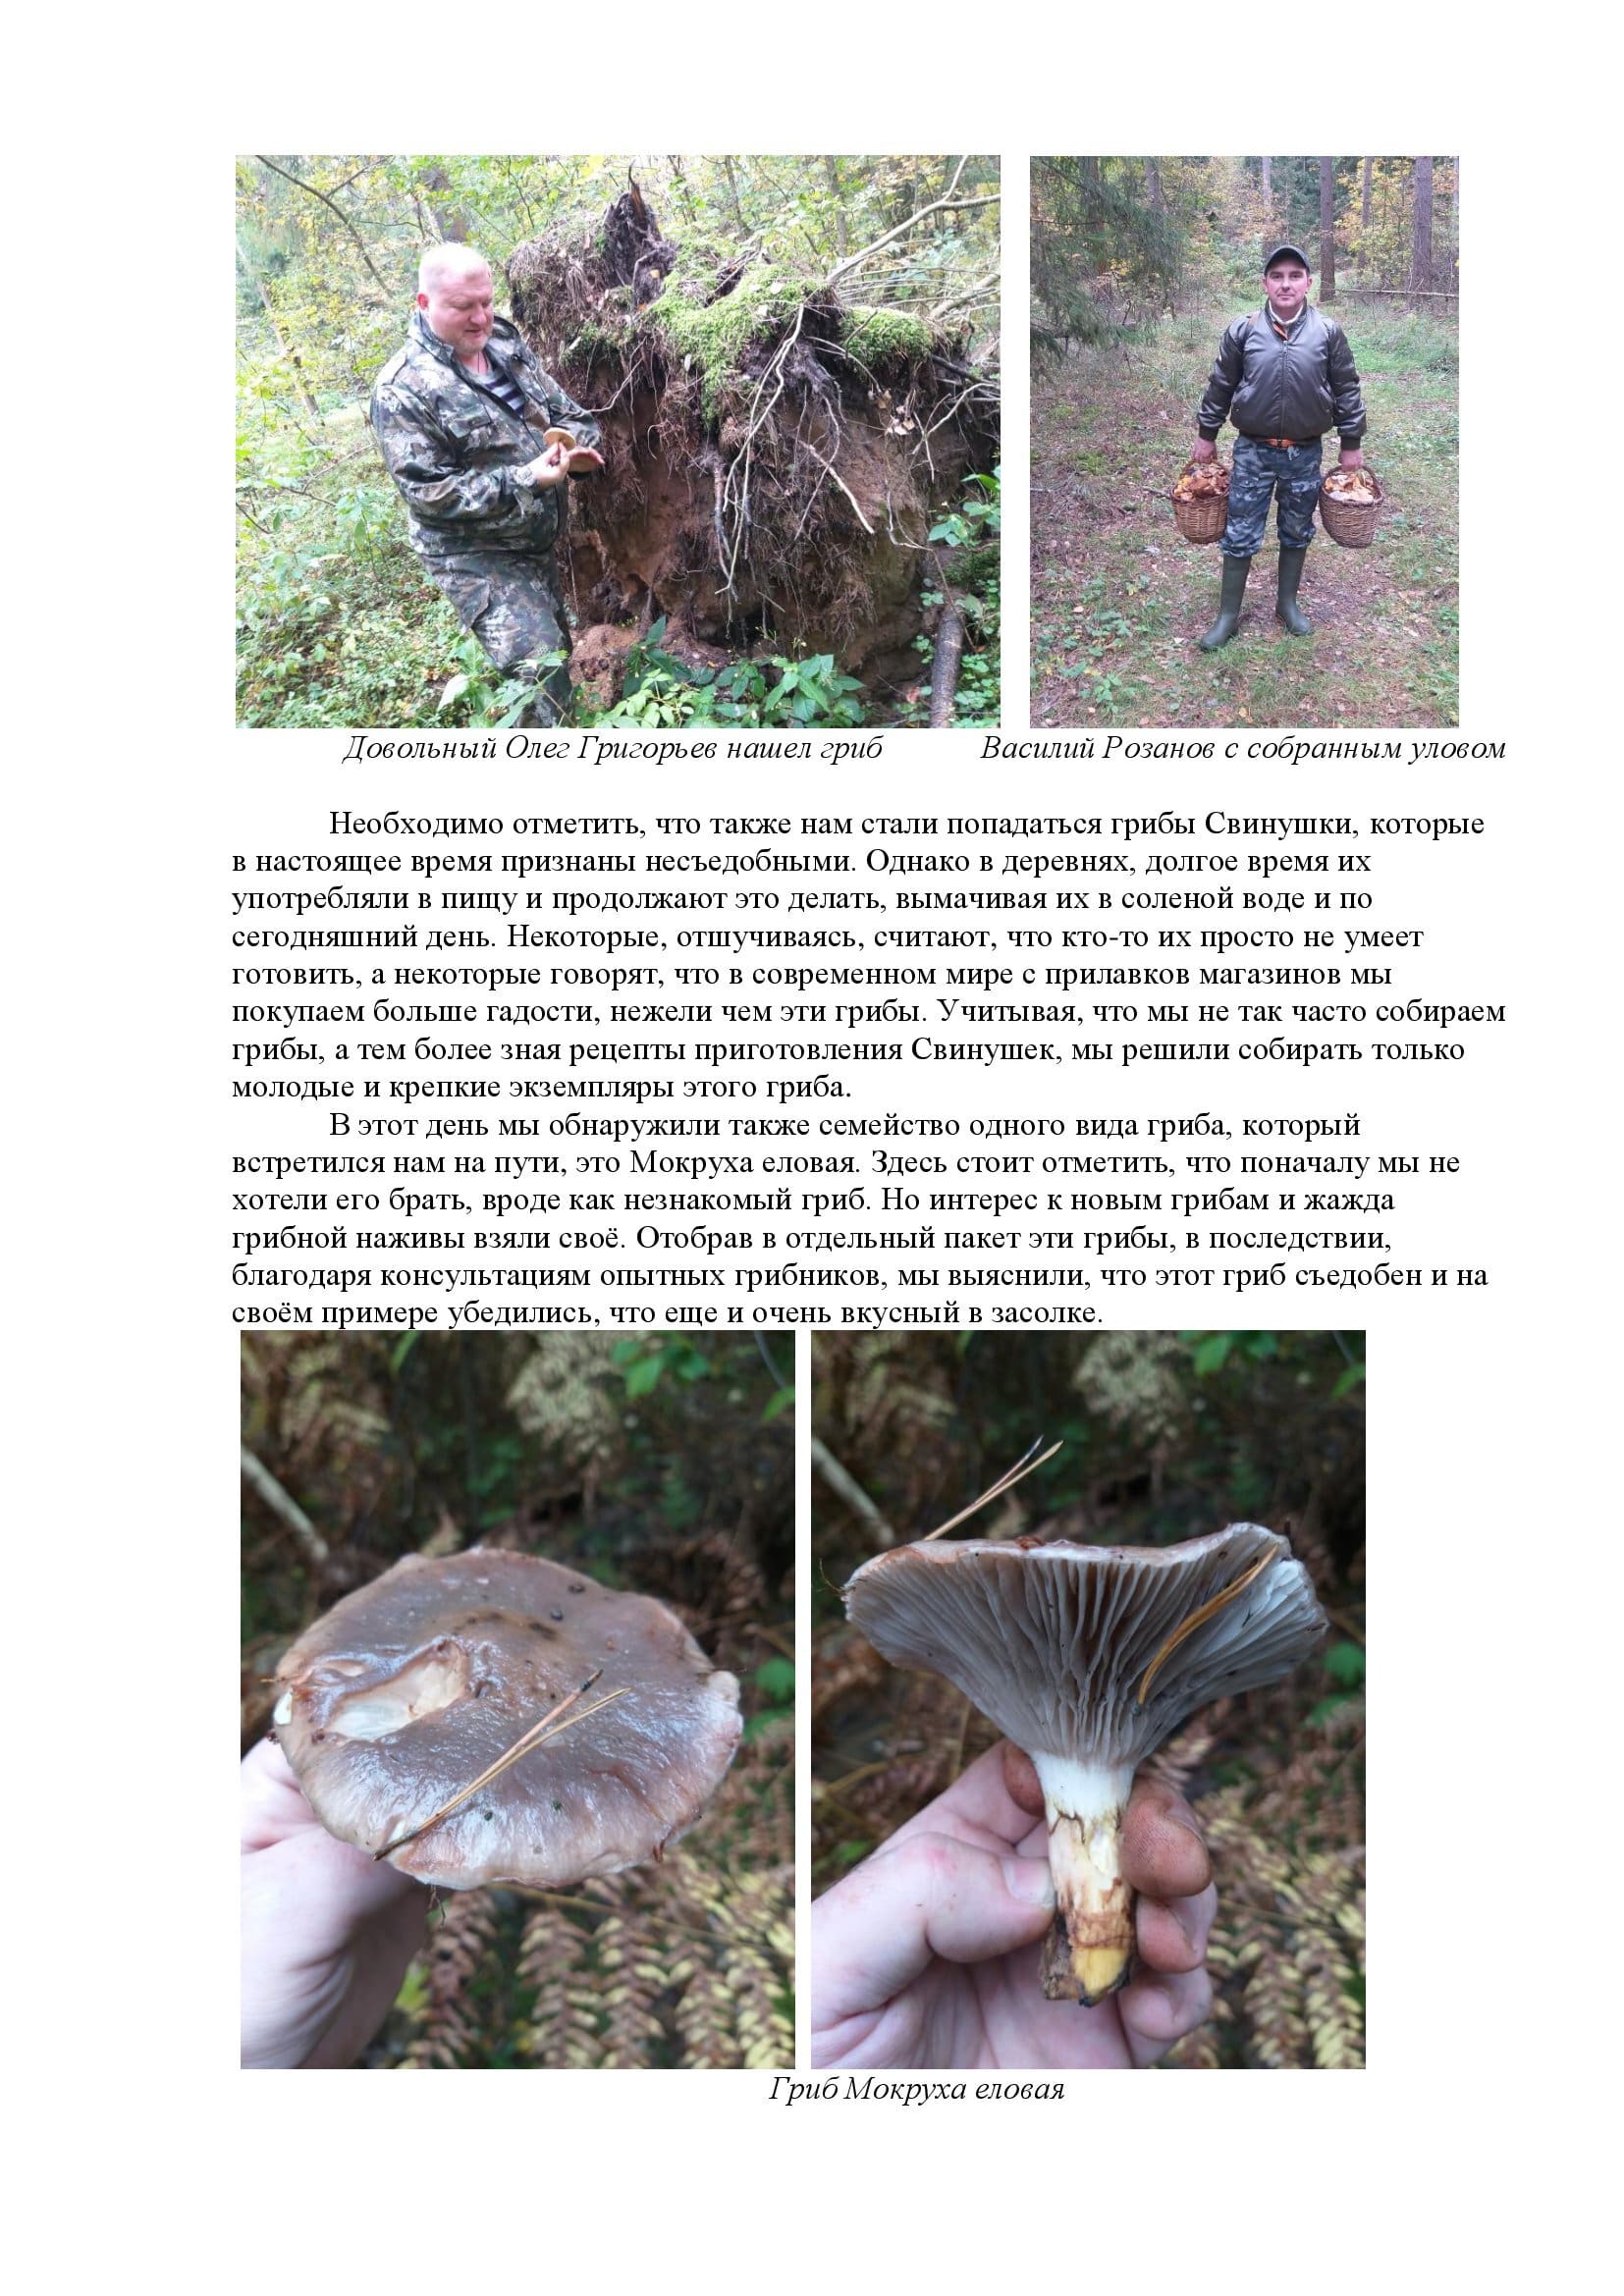 По следам грибных троп или повесть о похождениях грибников-любителей - фото 5